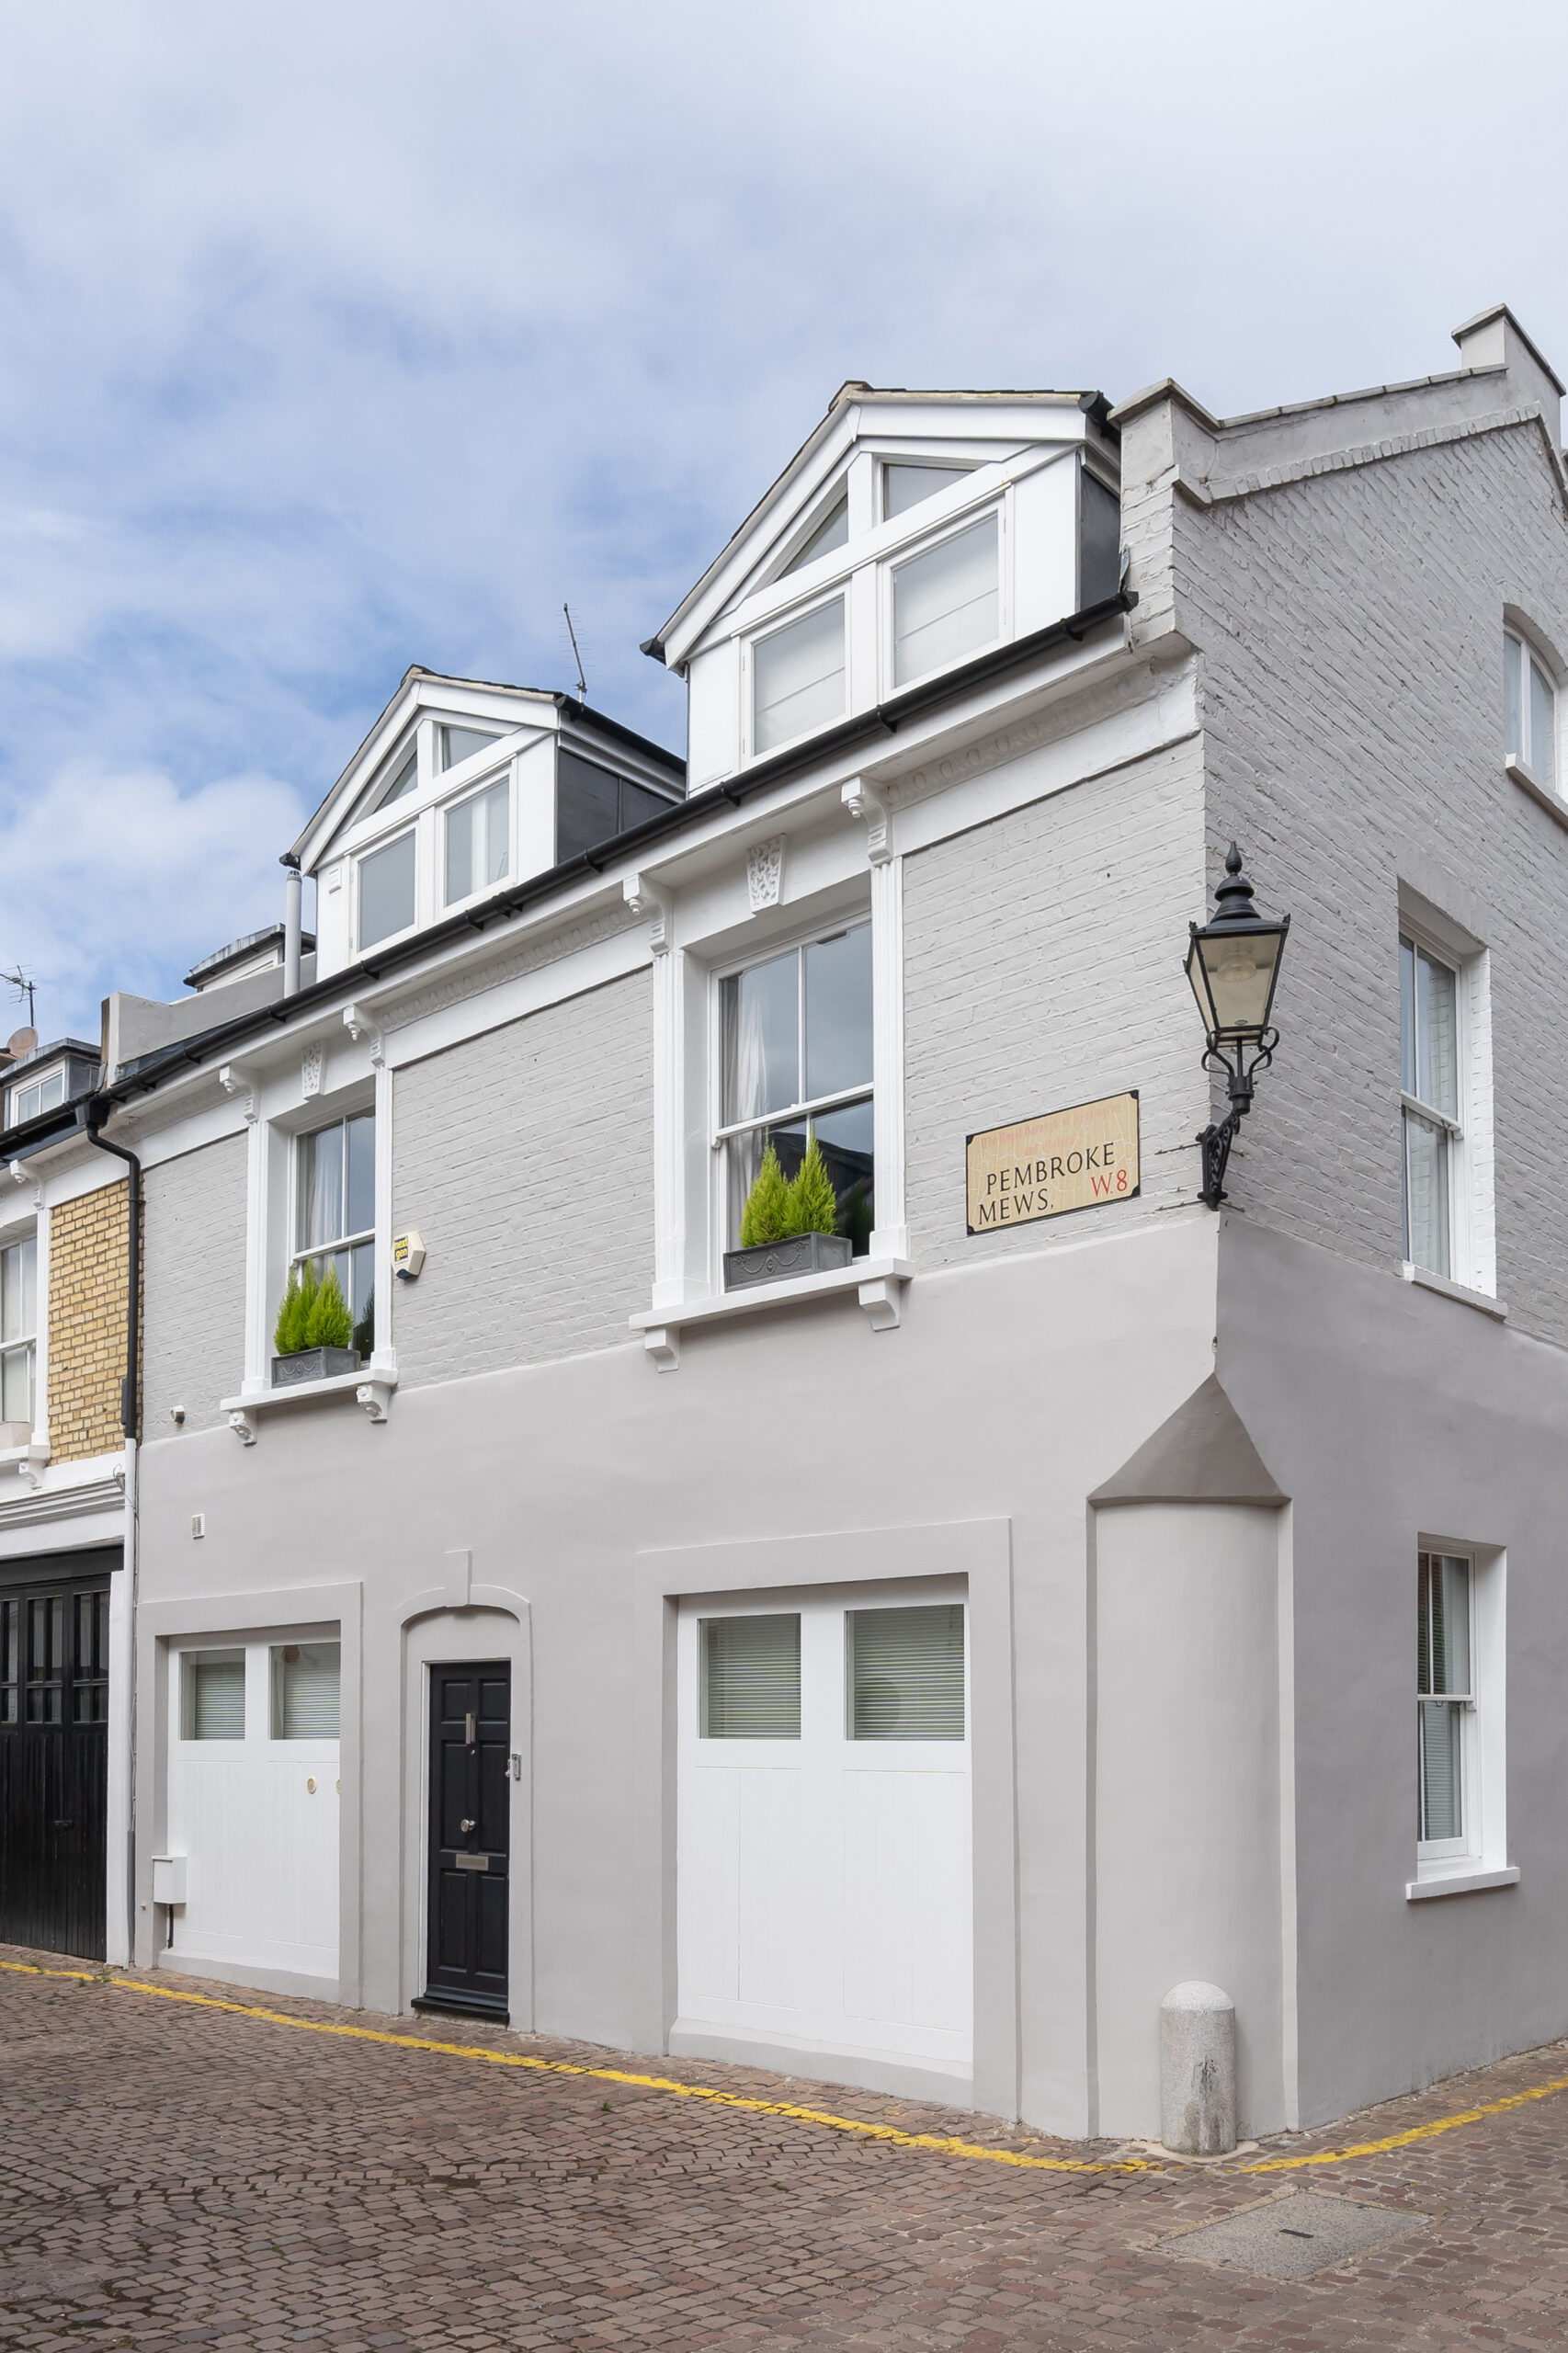 Domus-Nova-London-Property-For-Rental-Pembroke-Mews-External (1-2)